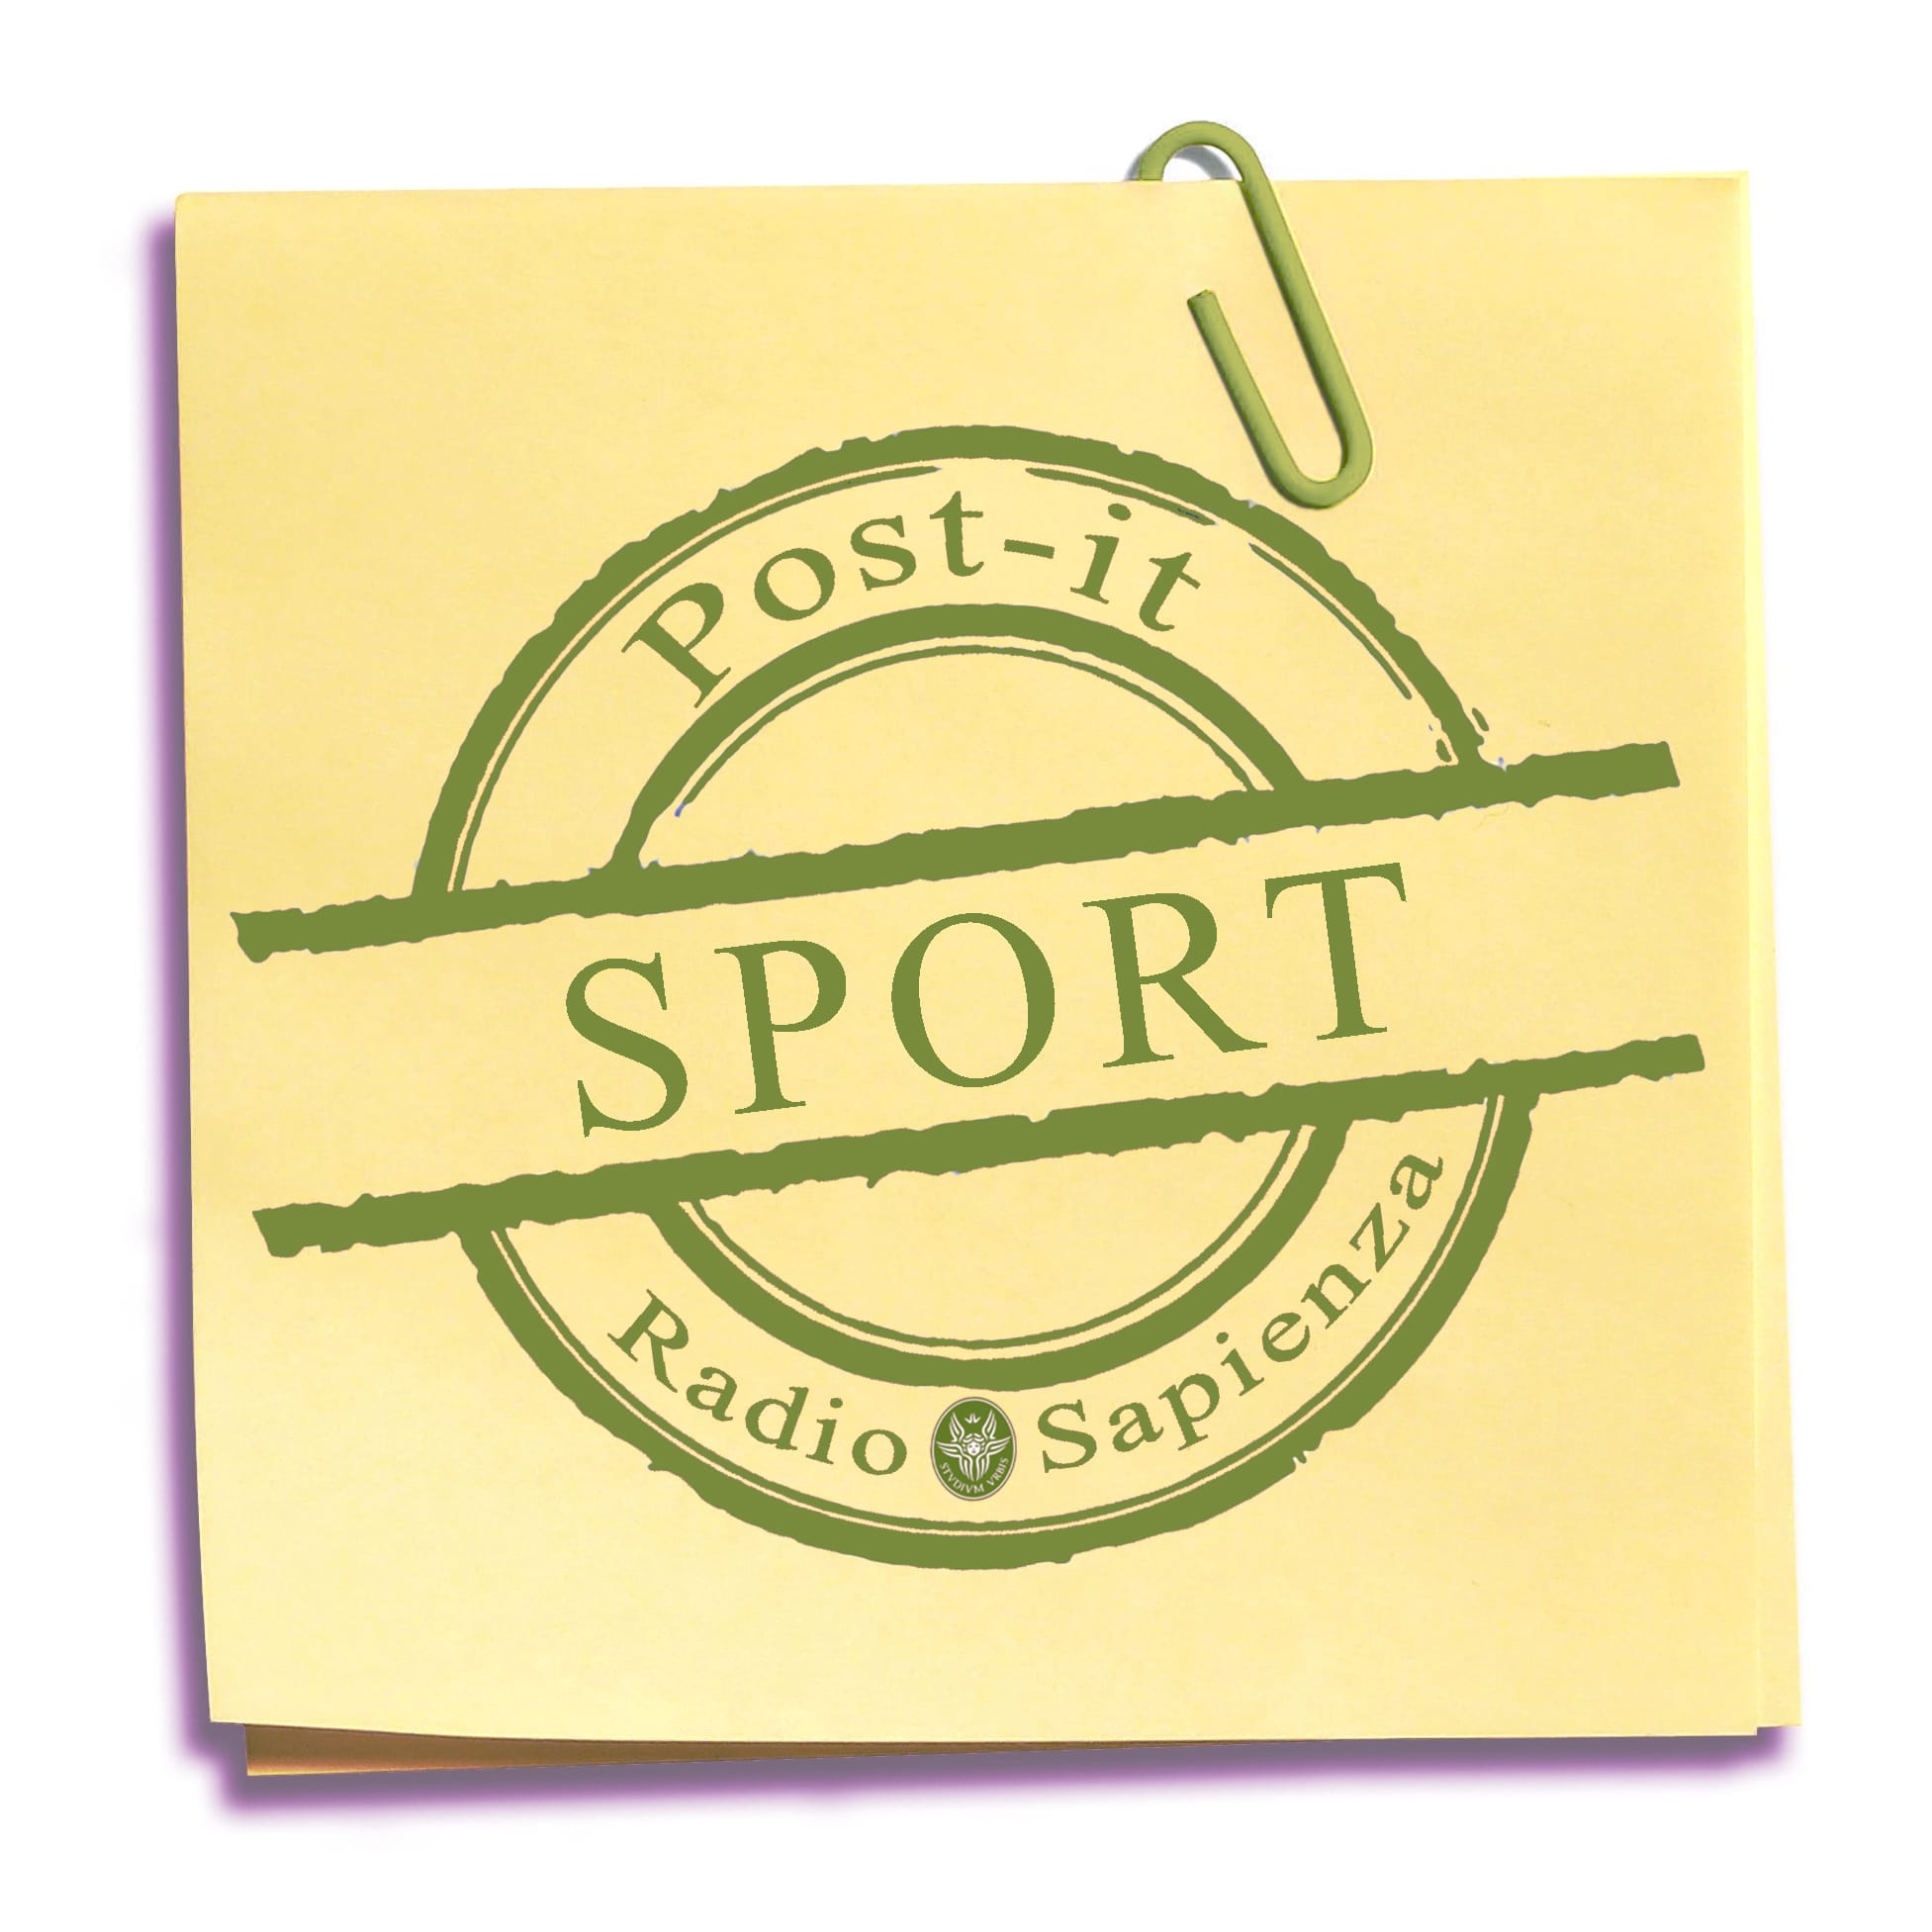 Post-it Sport – Martedì 11 maggio 2021